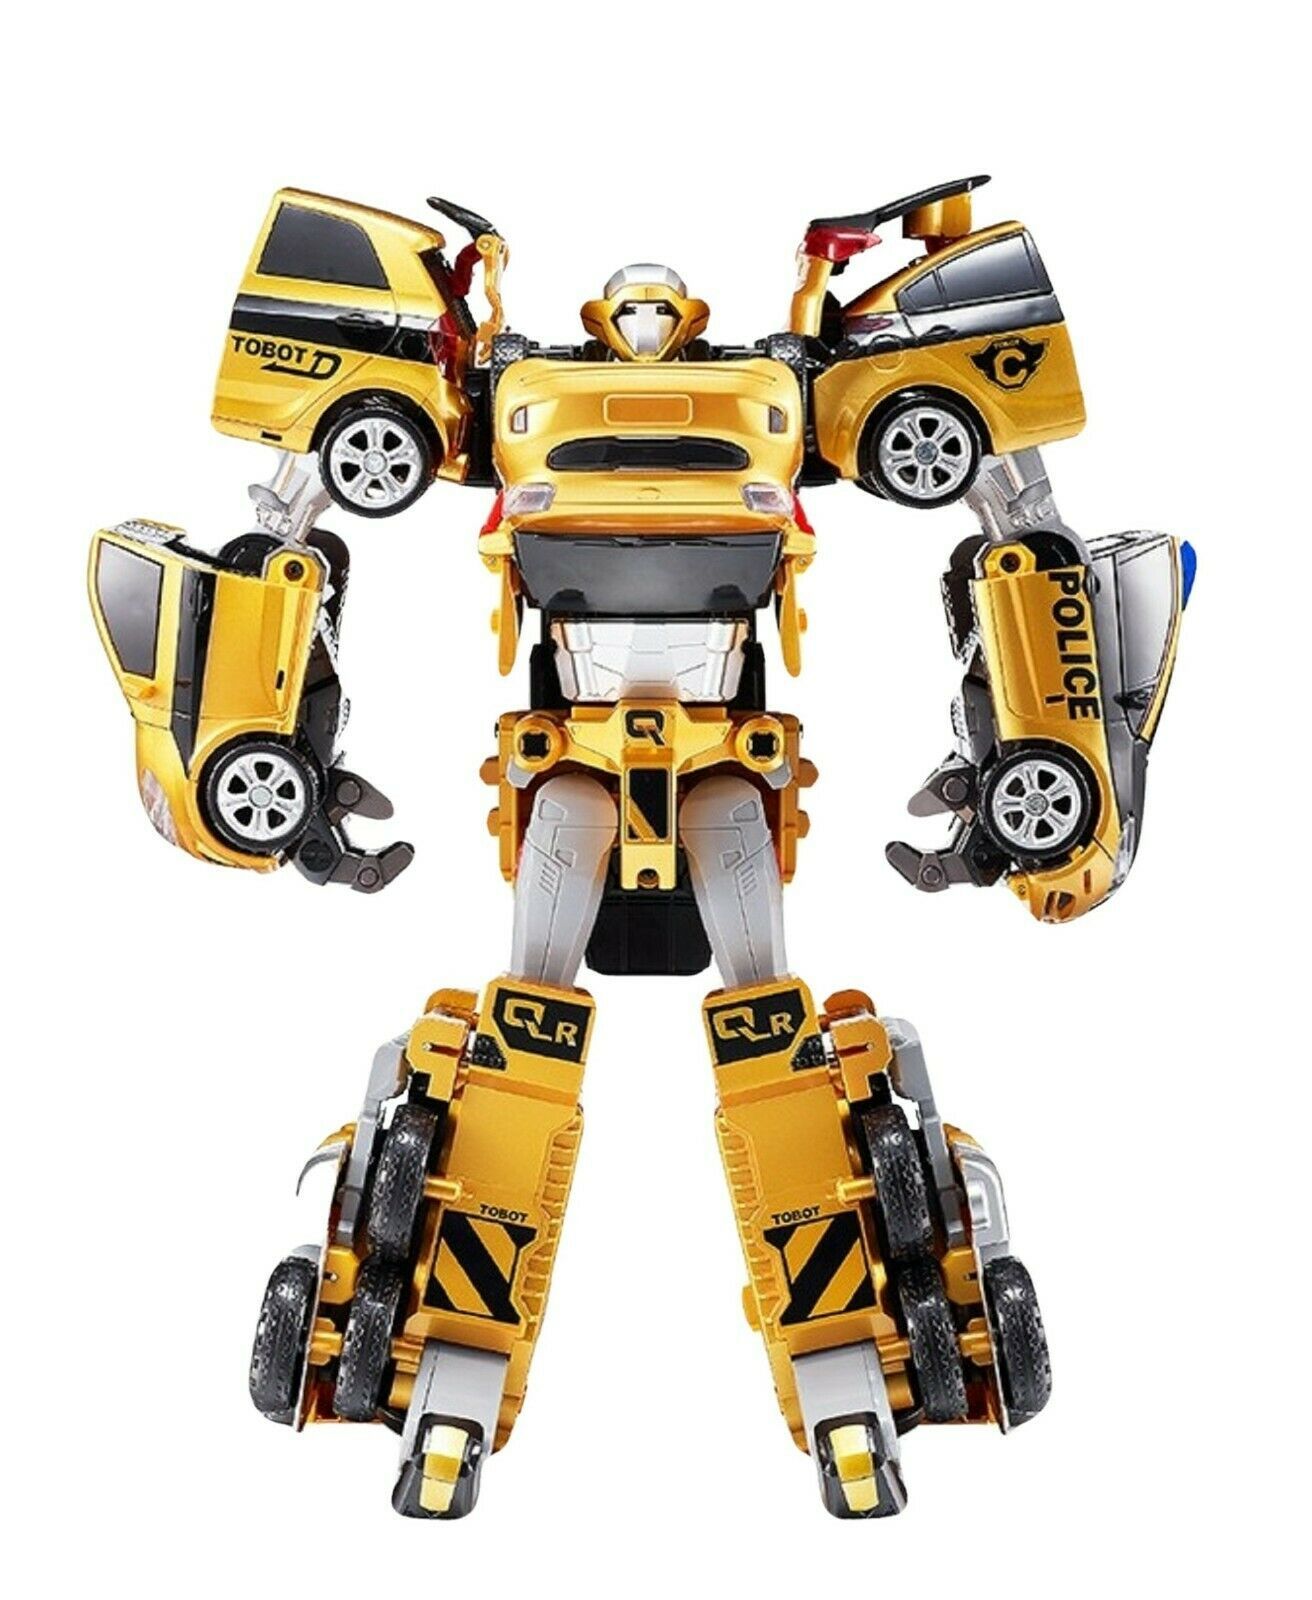 Tobot V Gold Quatran Toy Robot Transforming Transformation 